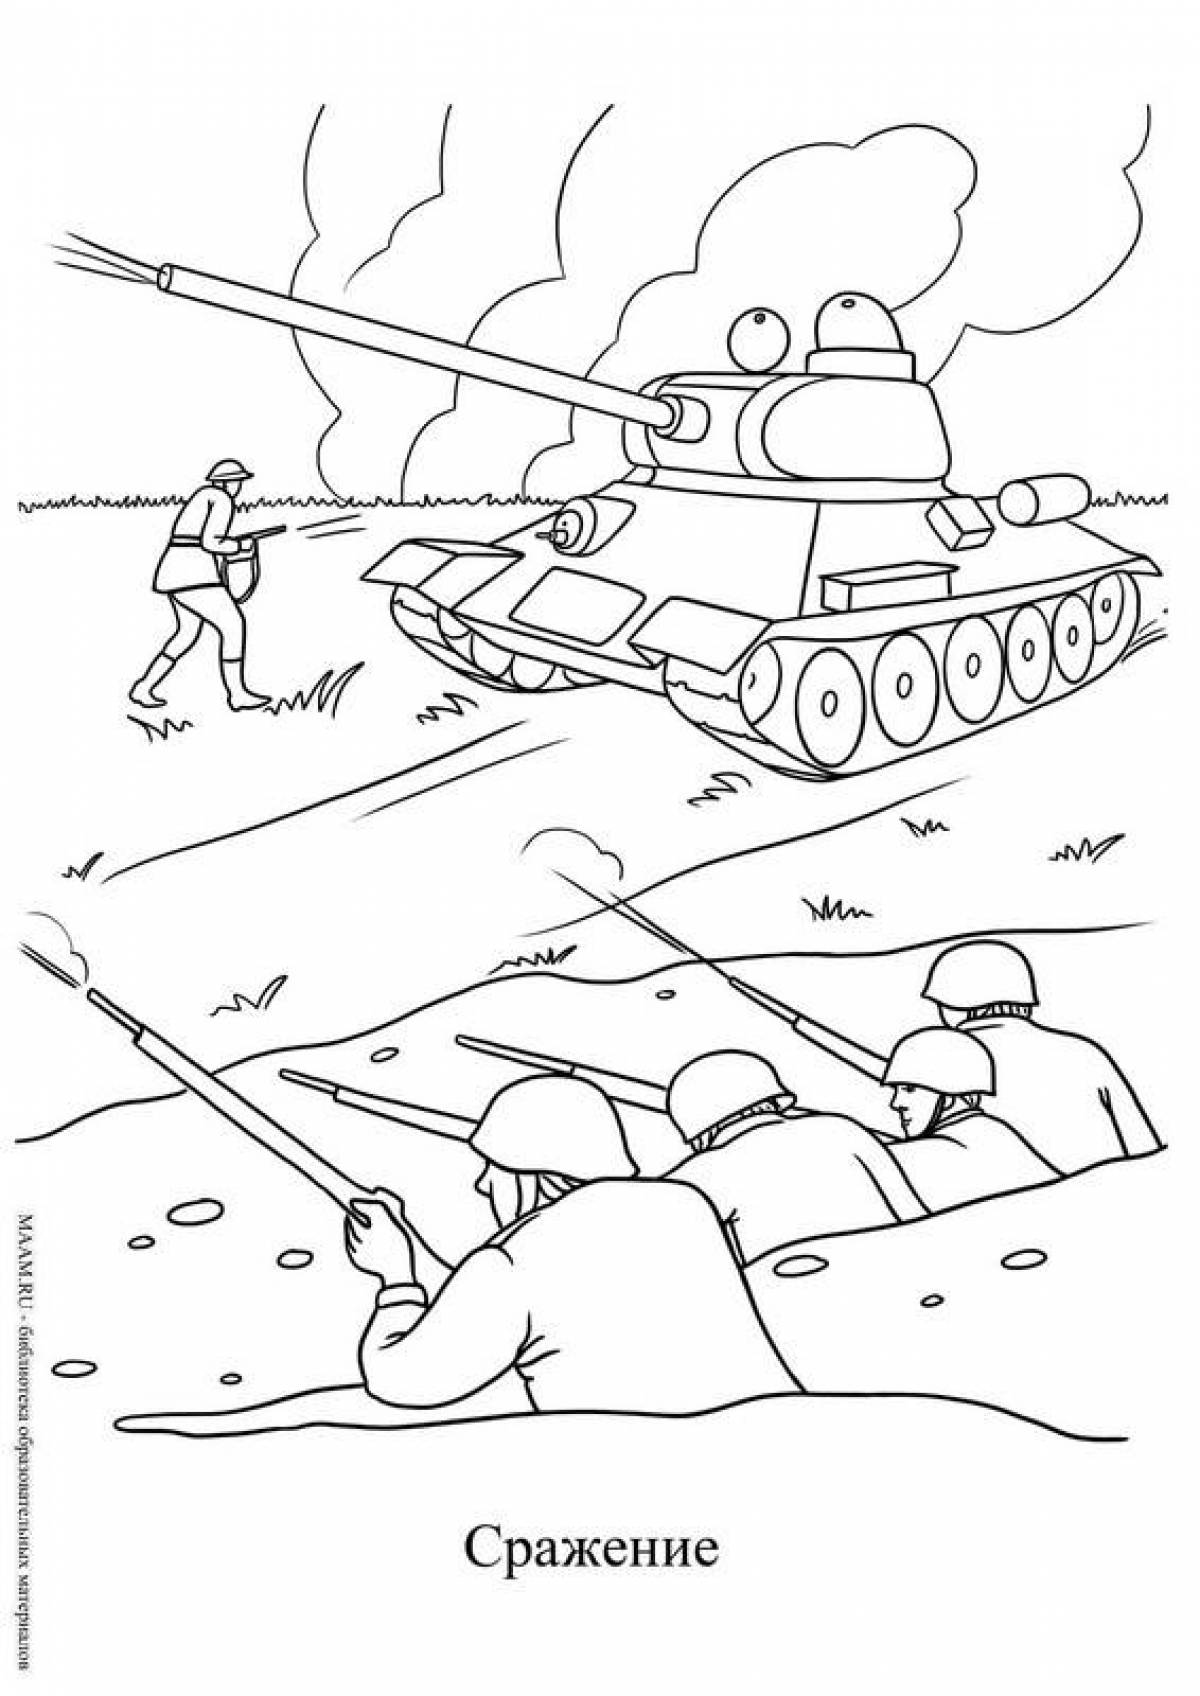 Stalingrad battle for children easy #6